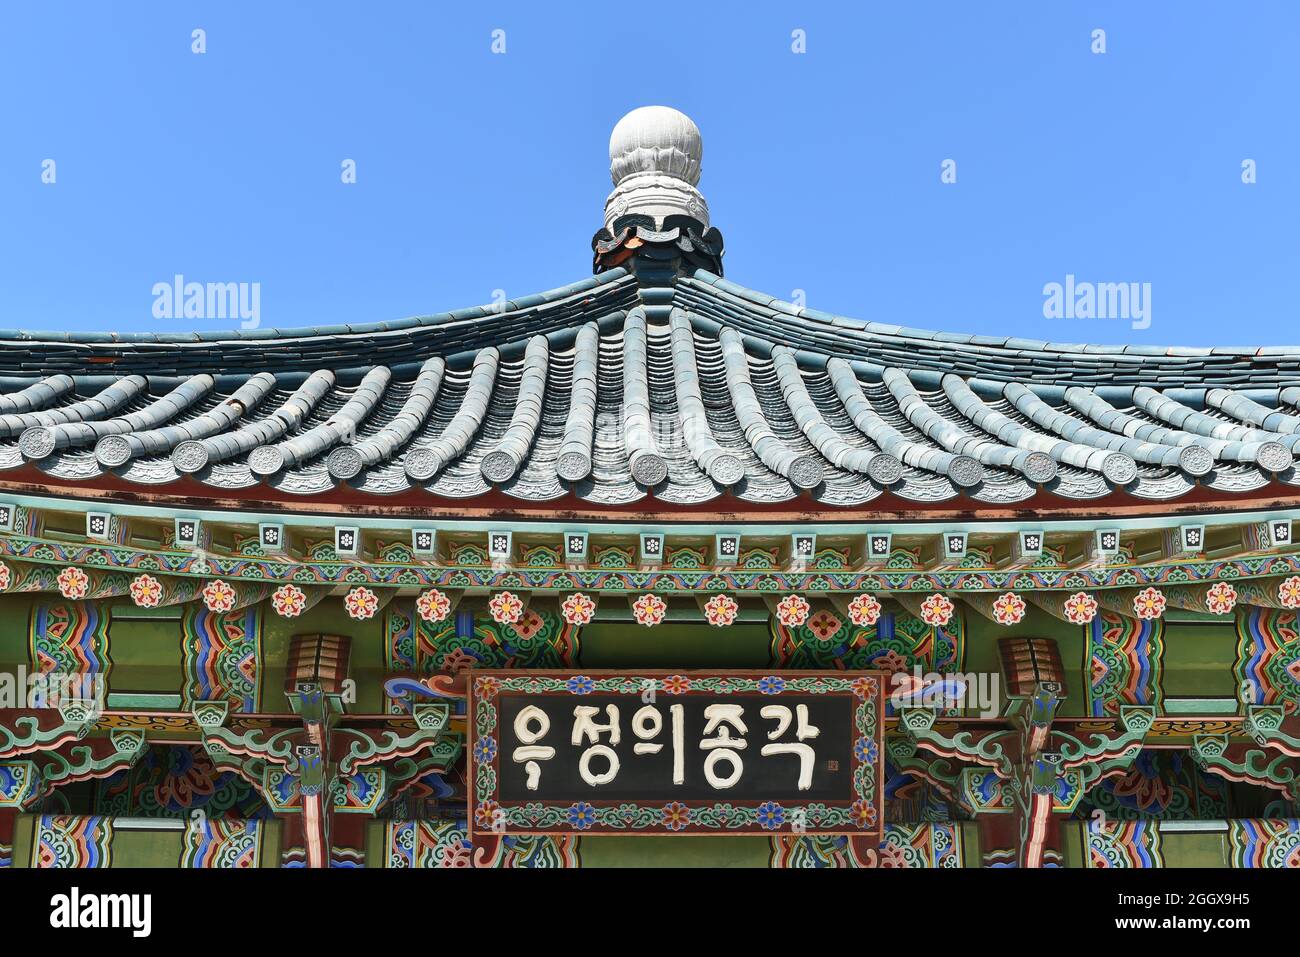 SAN PEDRO, KALIFORNIEN - 27. AUG 2021: Nahaufnahme der Pagode bei der koreanischen Freundschaftsglocke im Angels Gate Park. Stockfoto